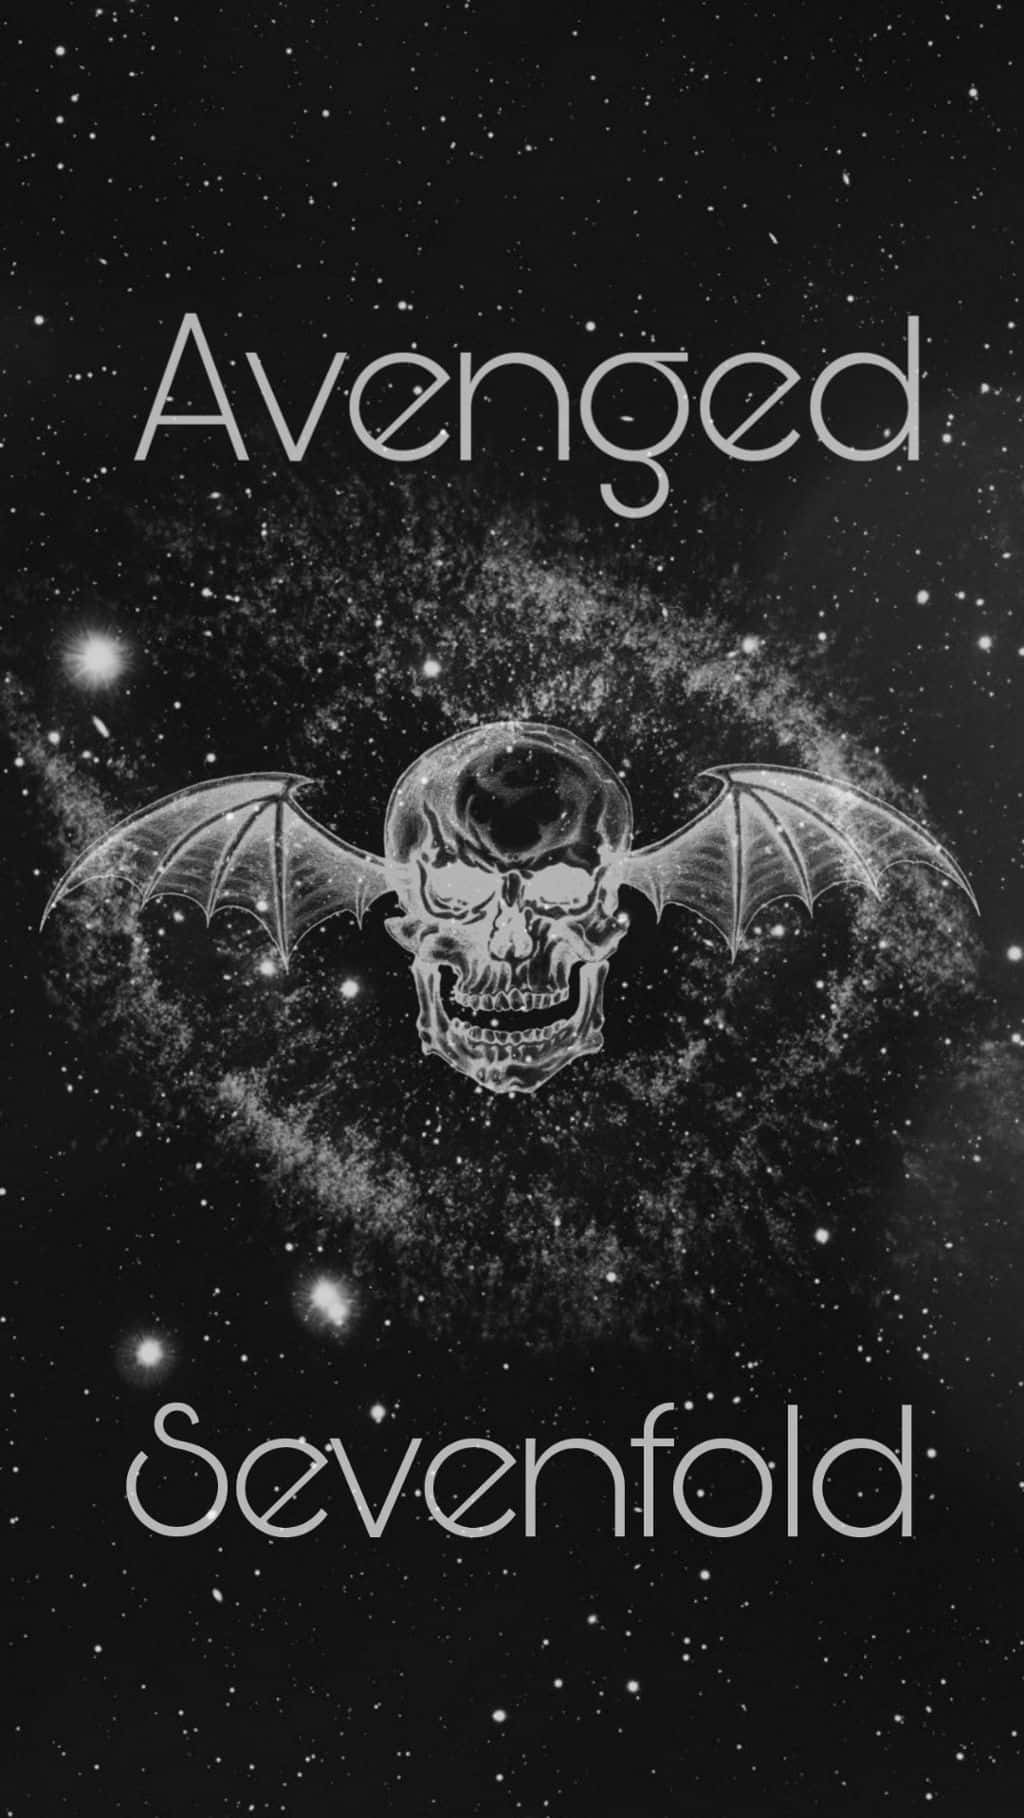 Avengedsevenfold - Arte Da Capa Do Cd - Anúncio. Papel de Parede